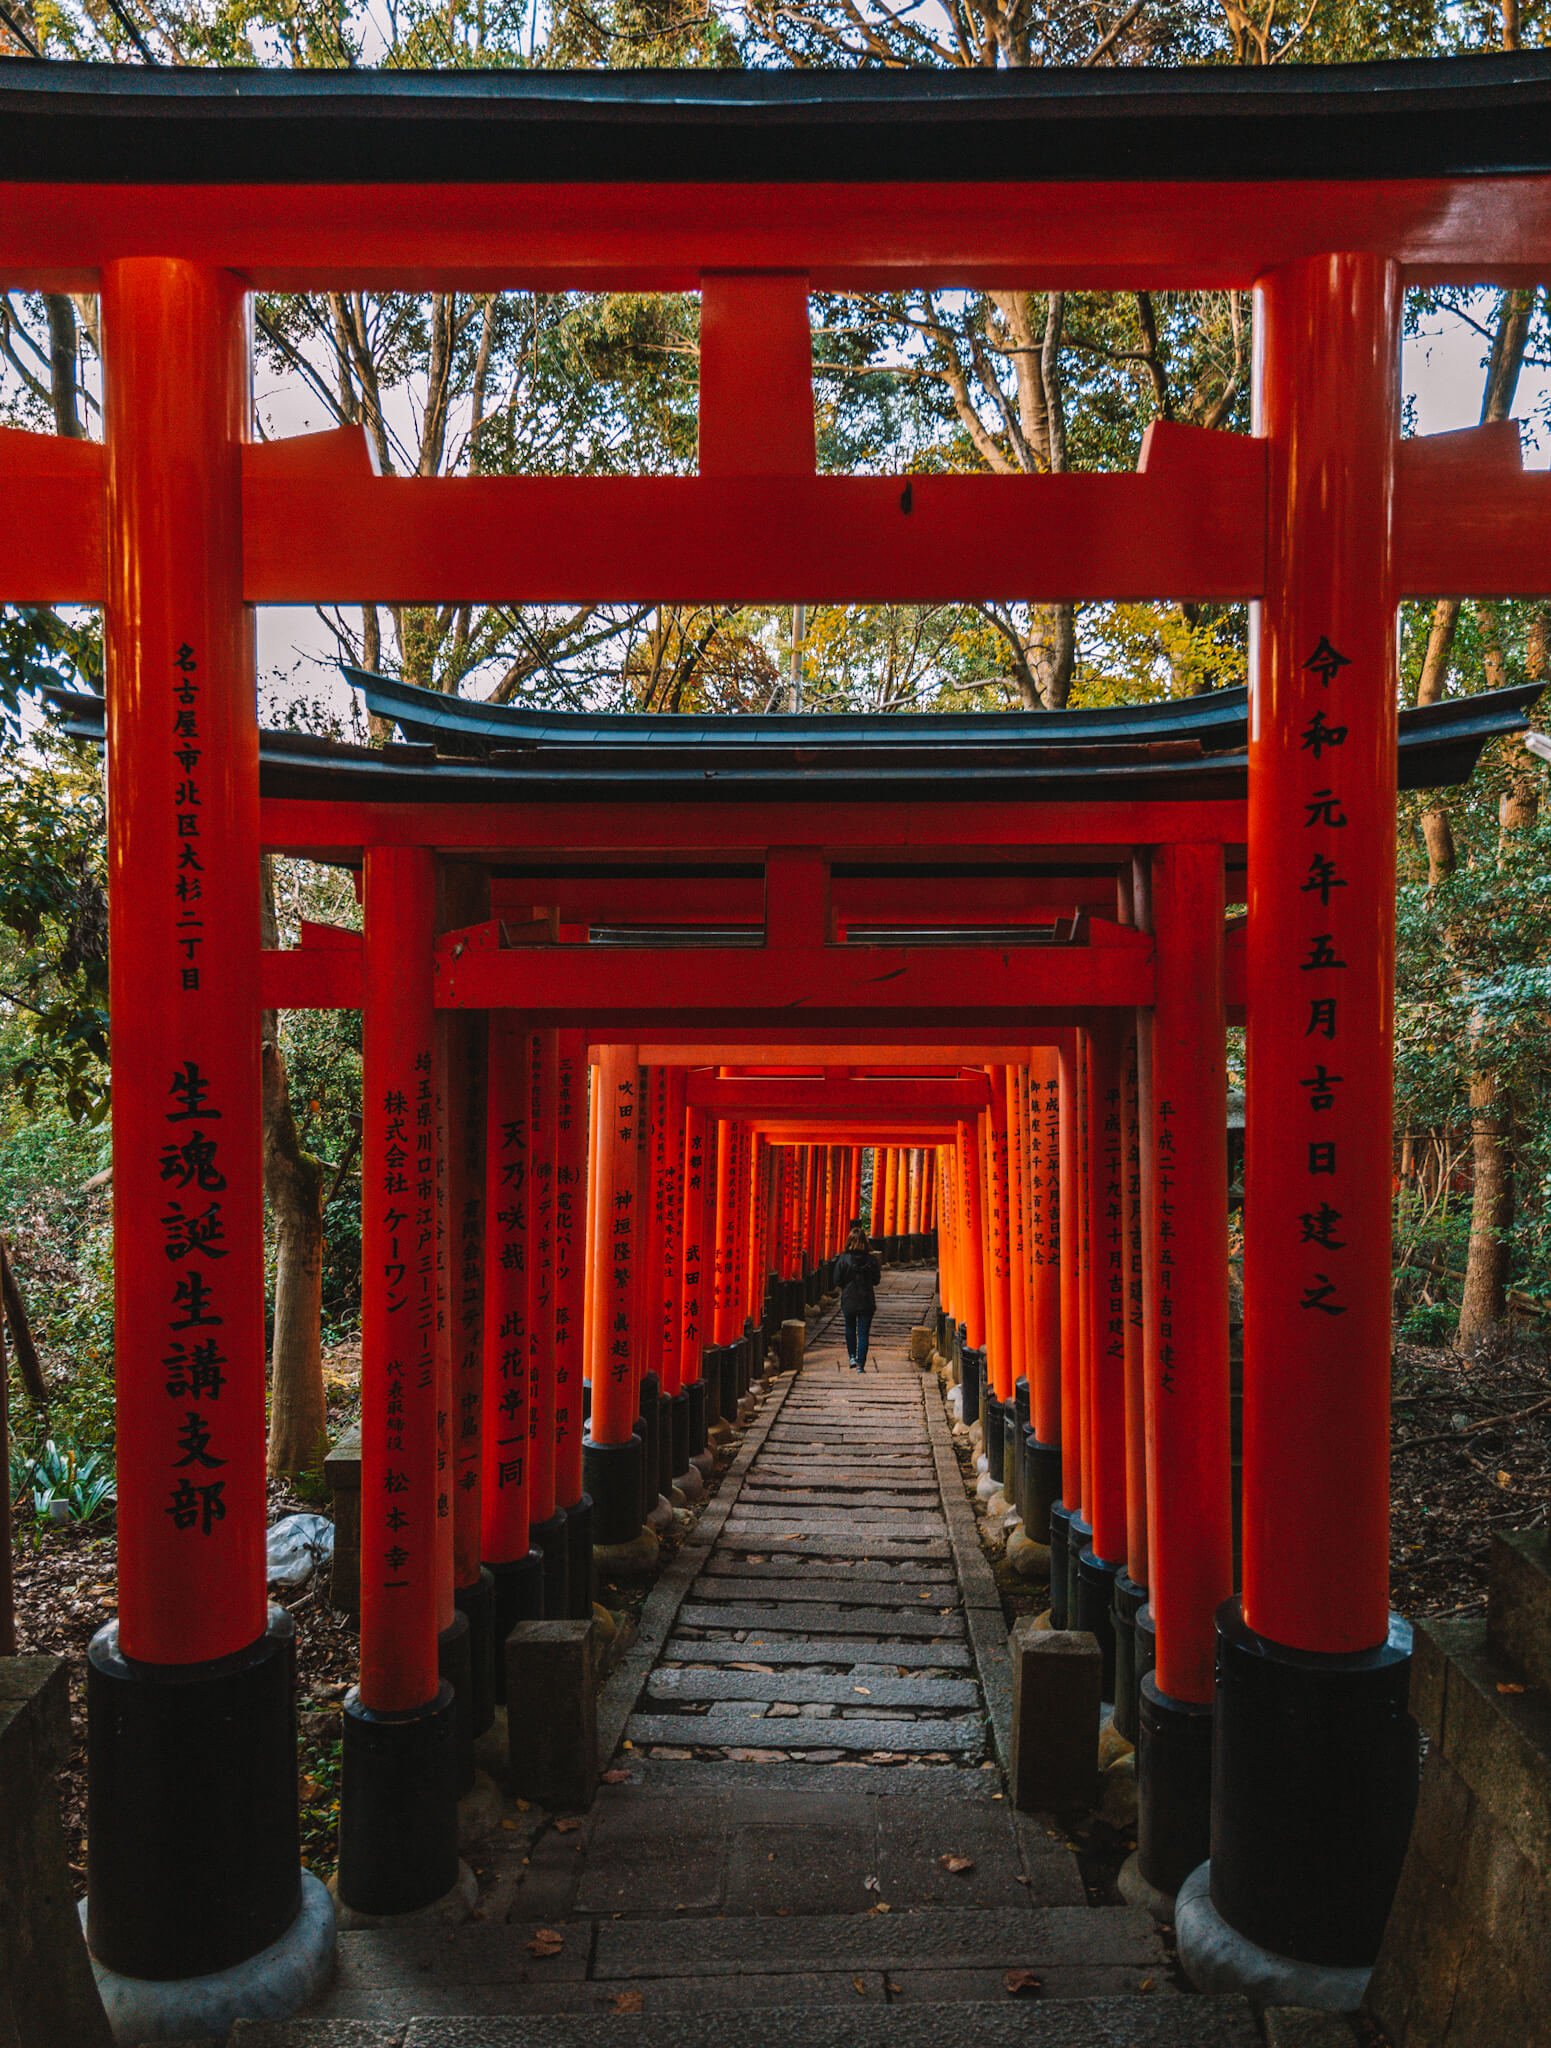 Carnet de voyage Japon : Itinéraire et retour d'expérience - Goyav